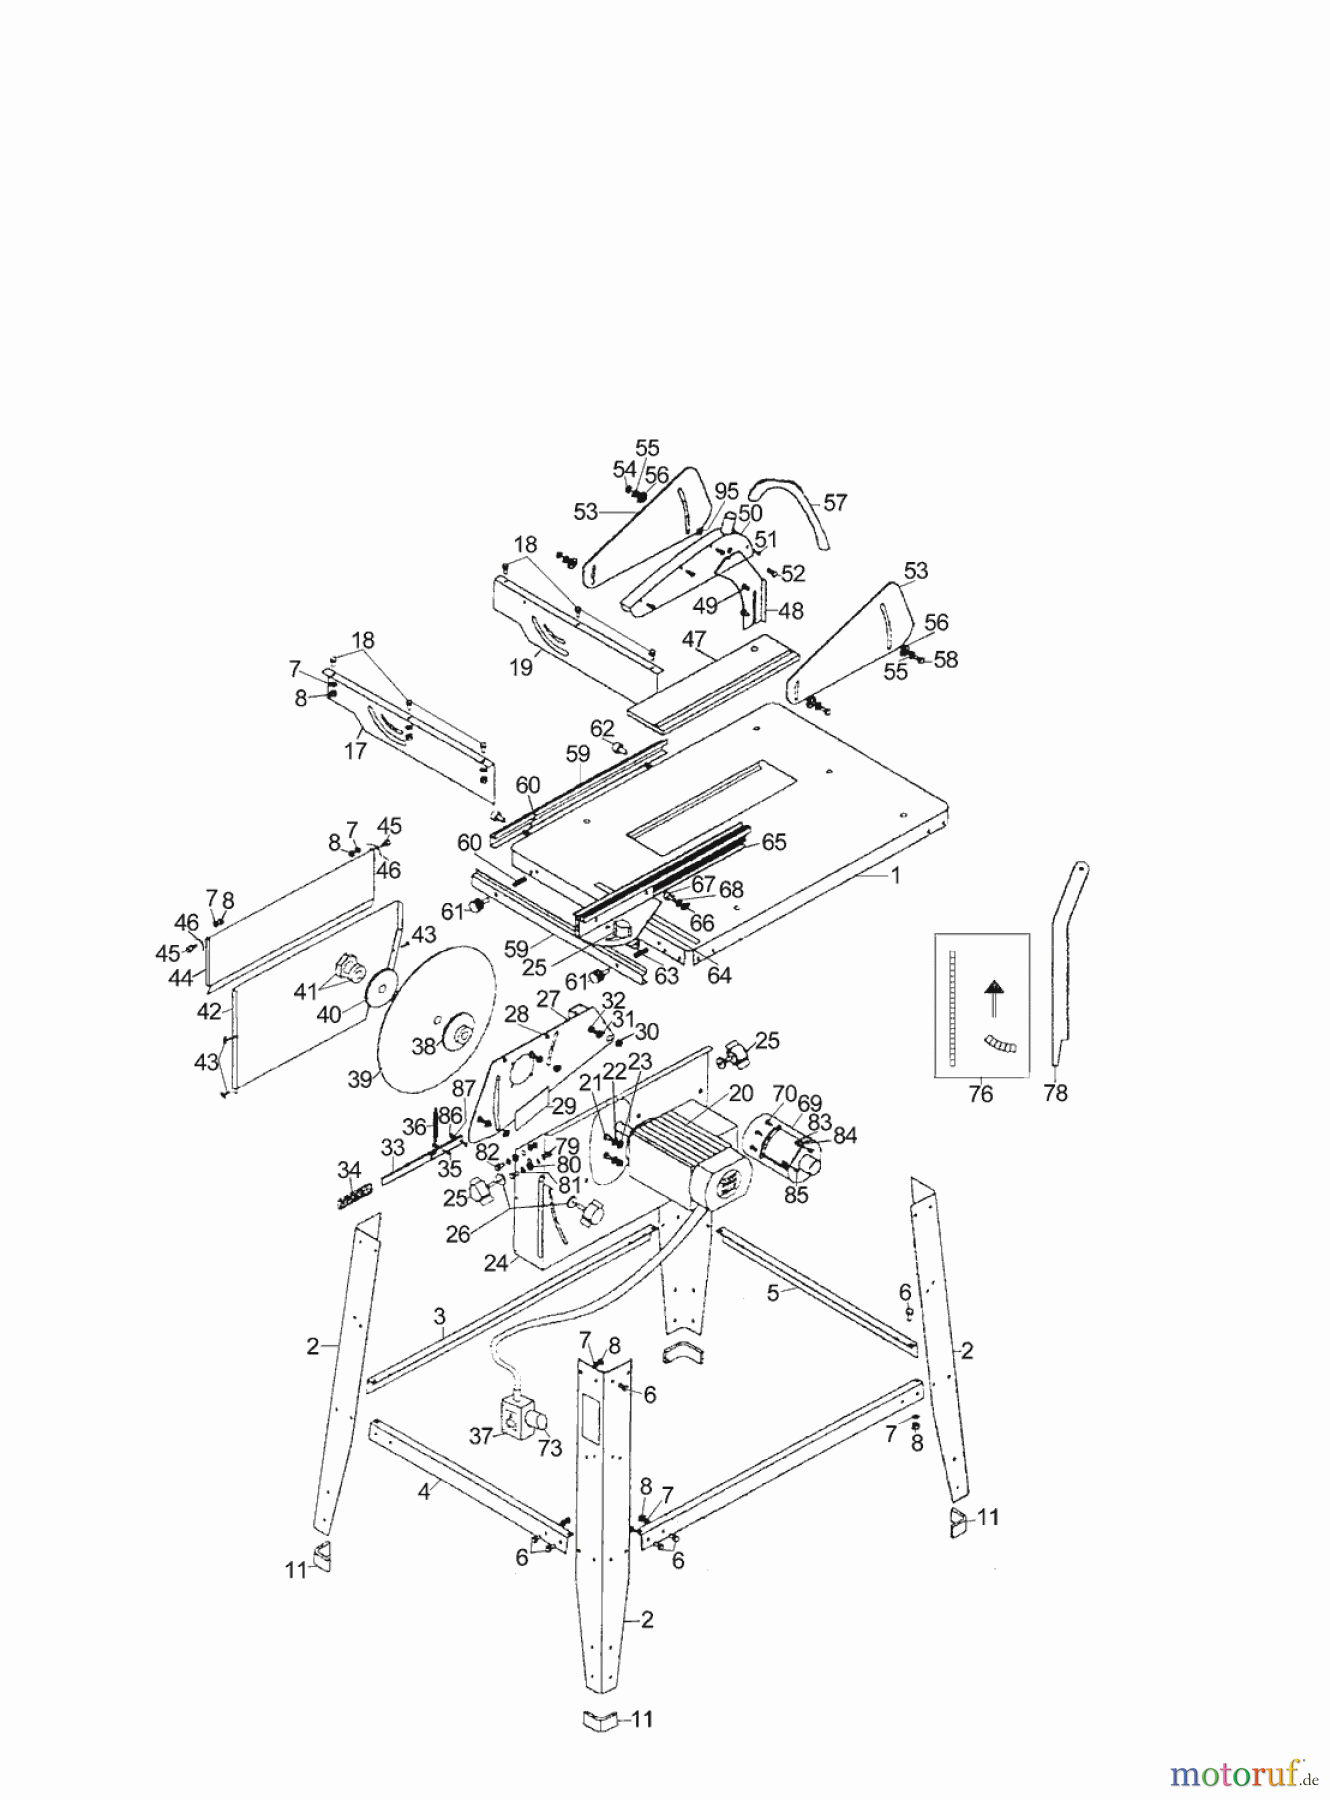  AL-KO Heimwerkertechnik Tischkreissägen TK 2500 Seite 1